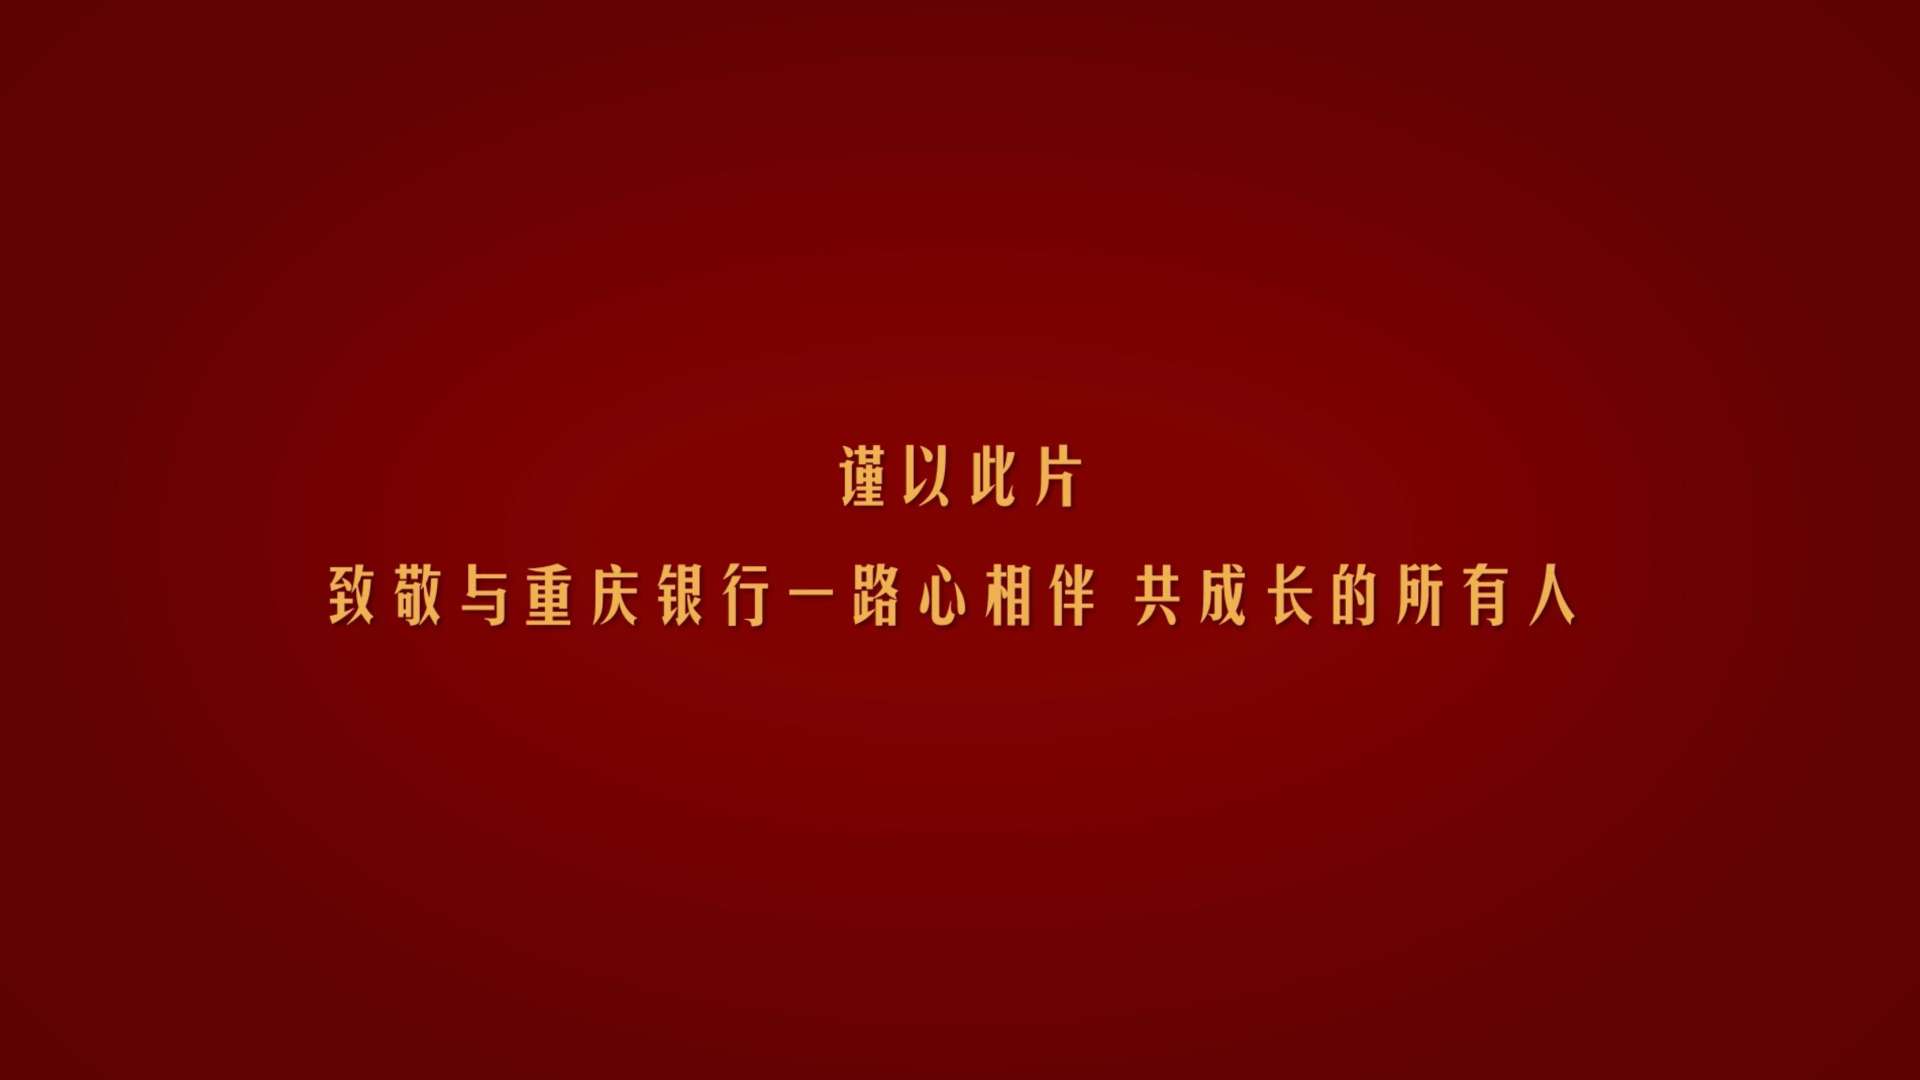 重庆银行A股上市宣传片